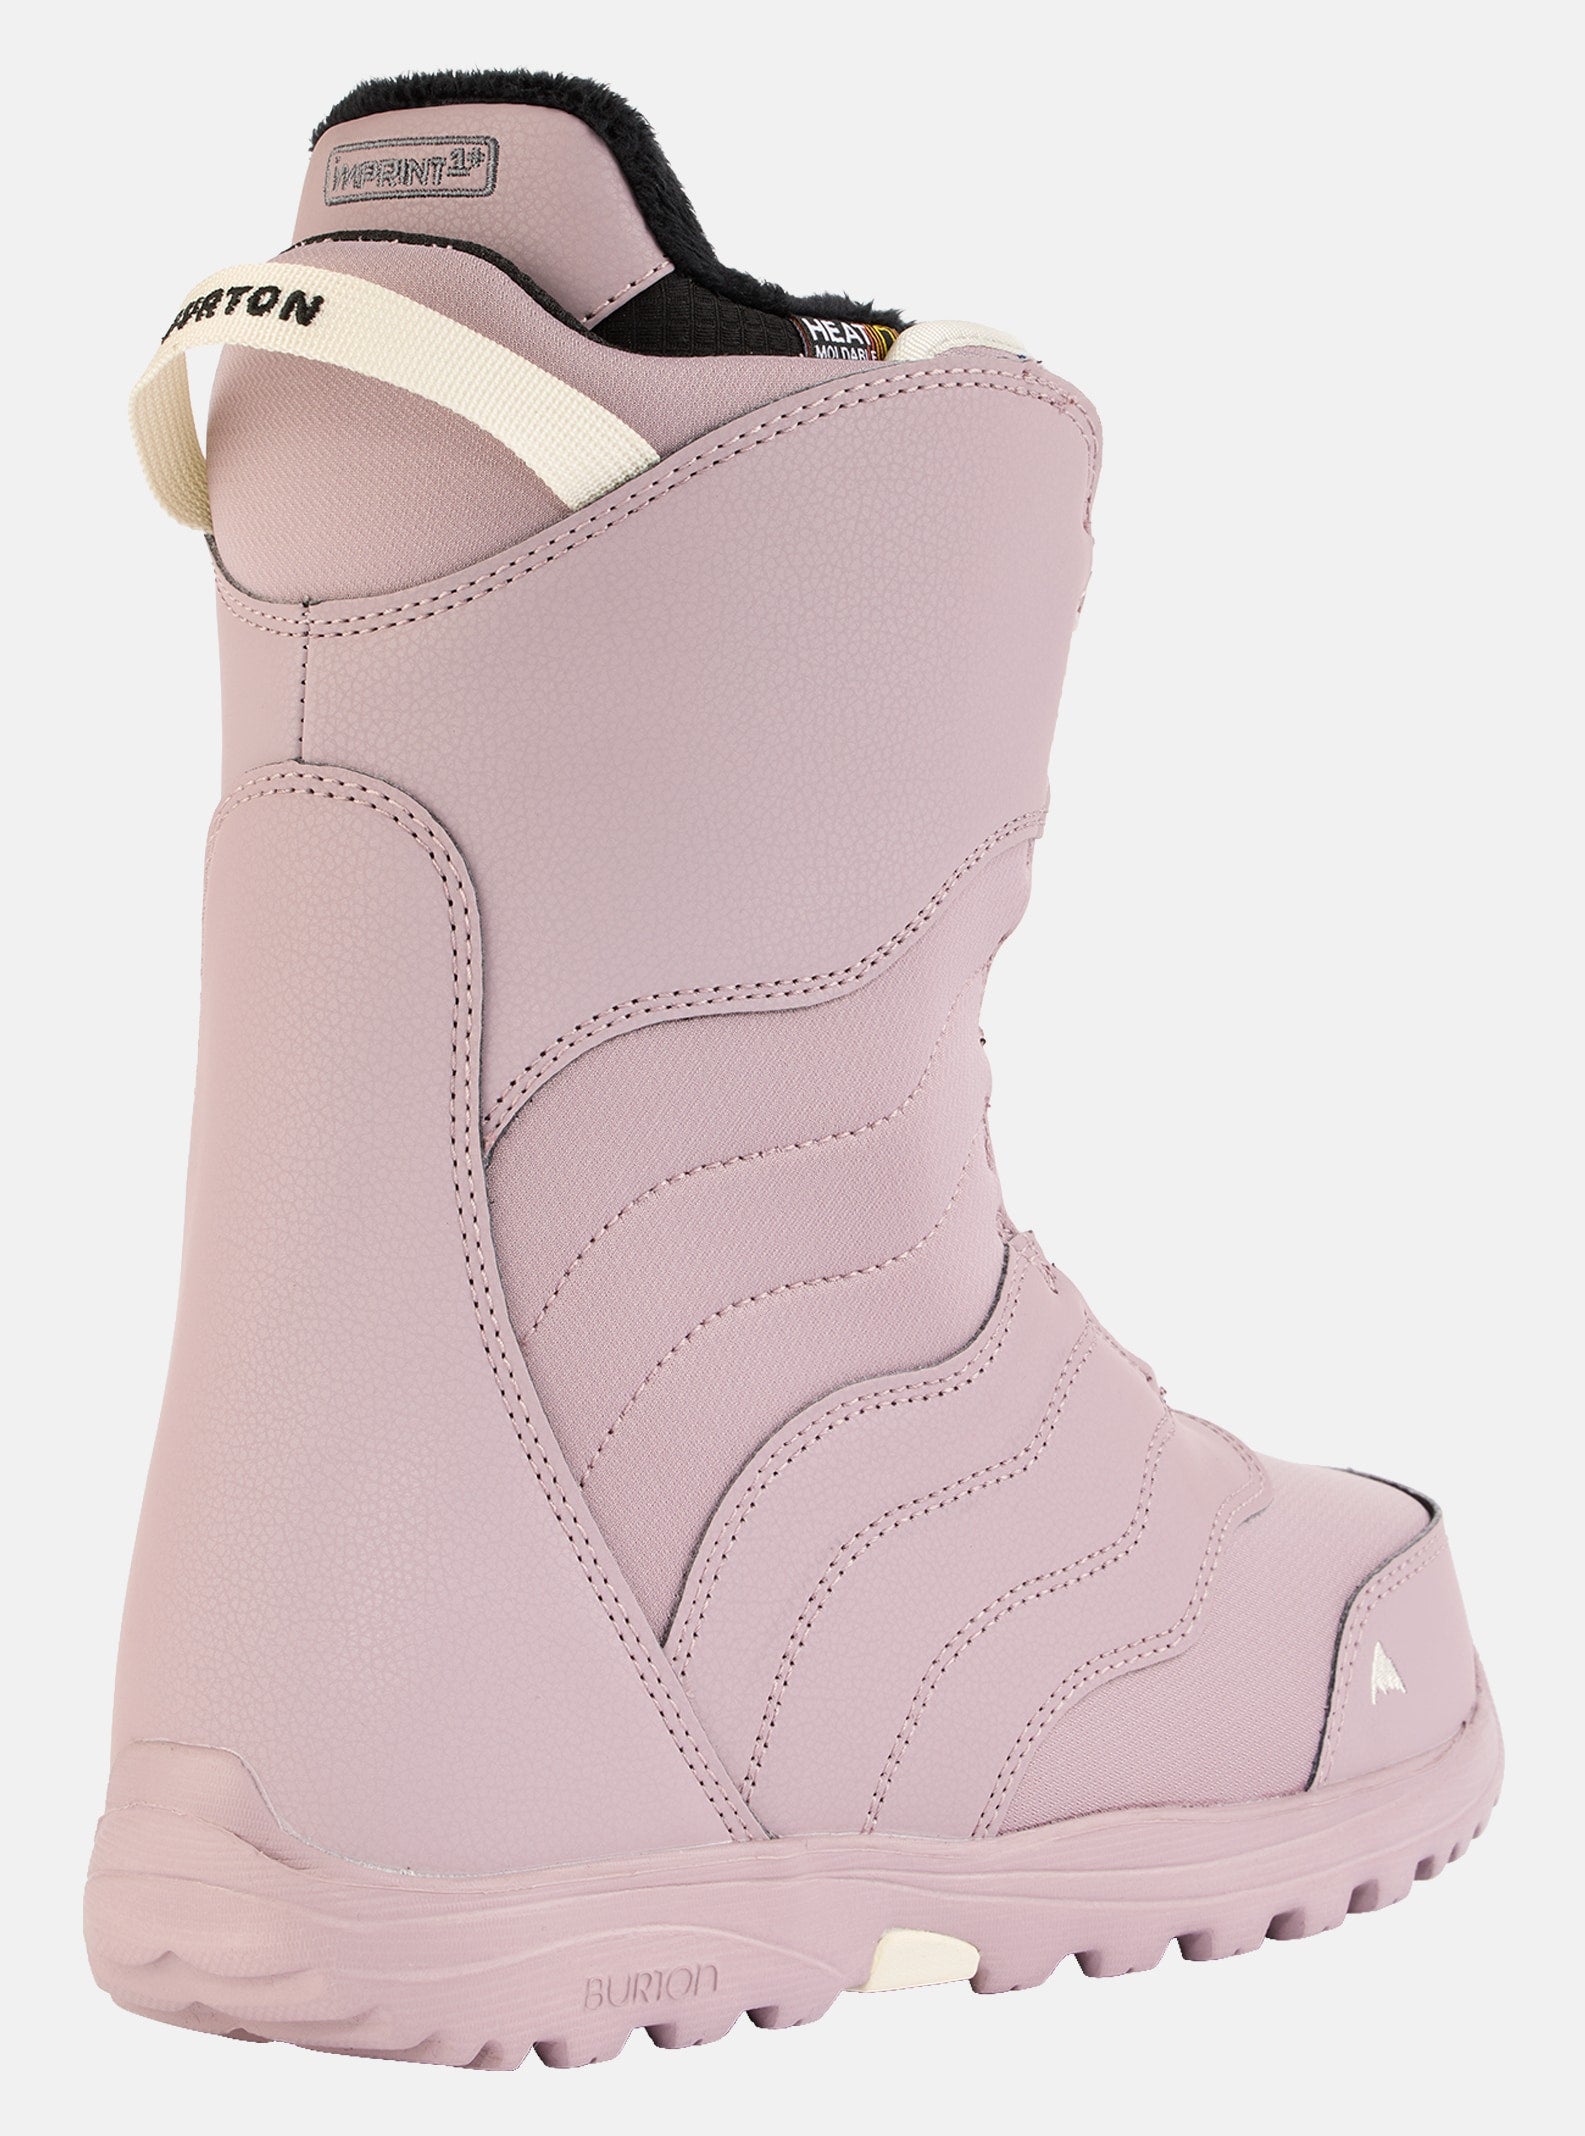 Women's Mint BOA® Snowboard Boots, Elderberry